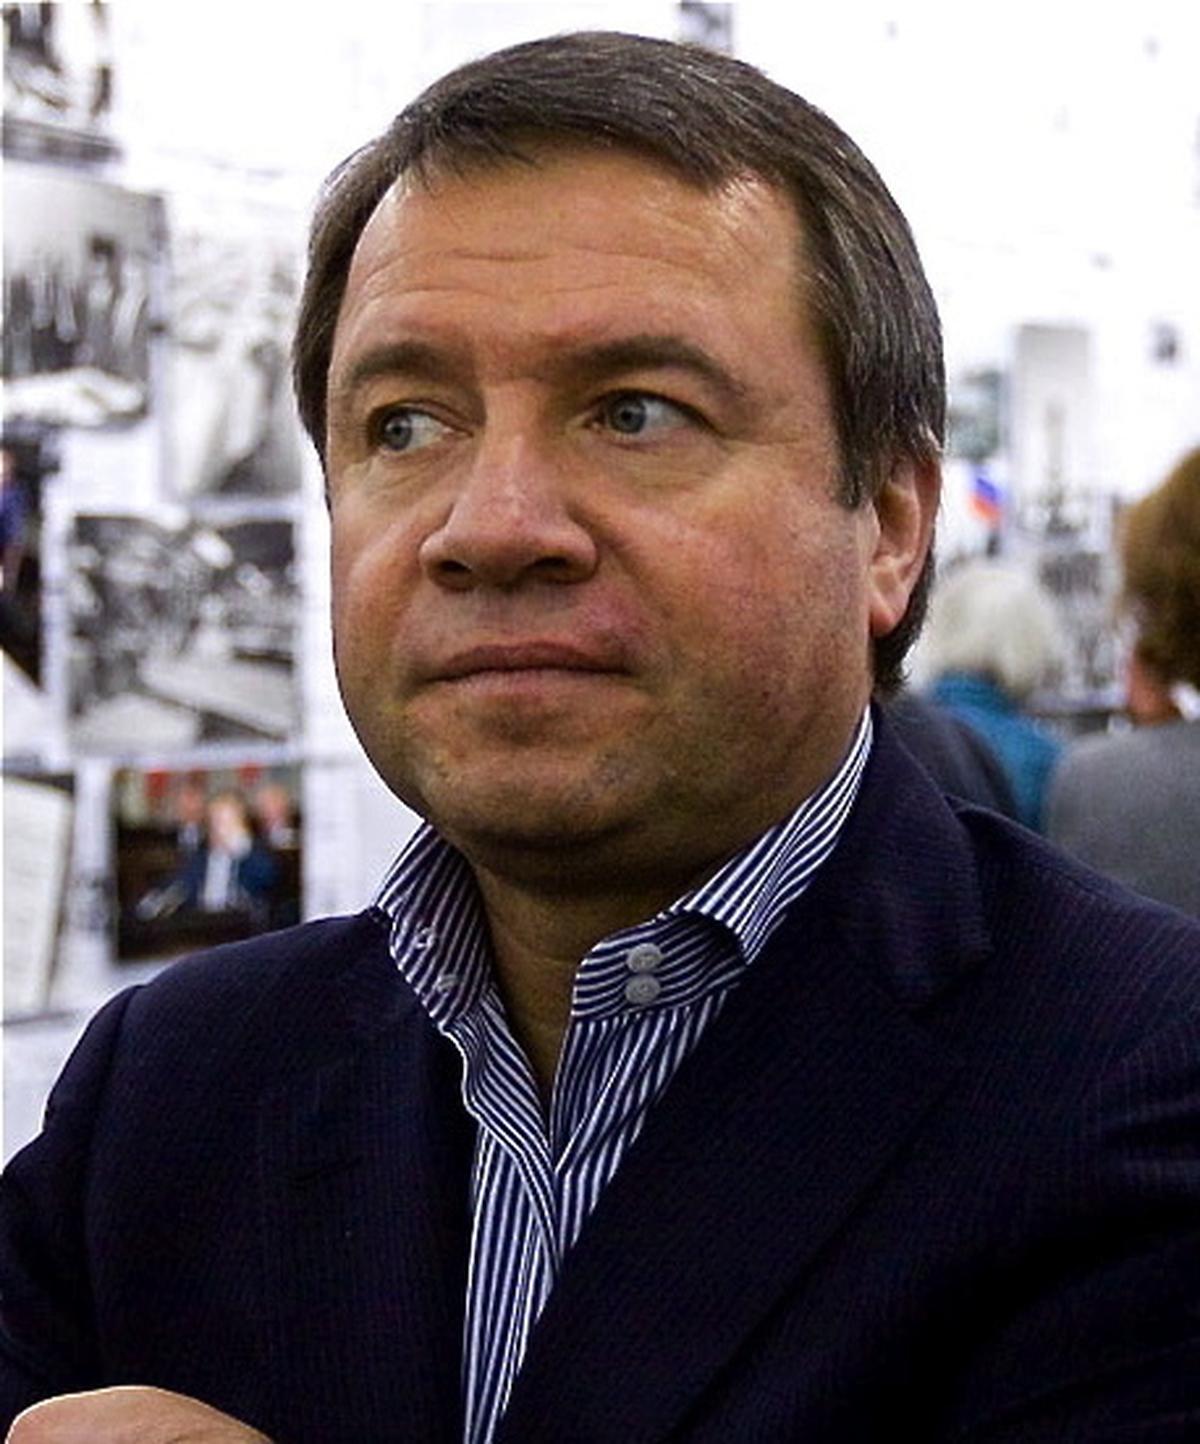 Валентин Юмашев